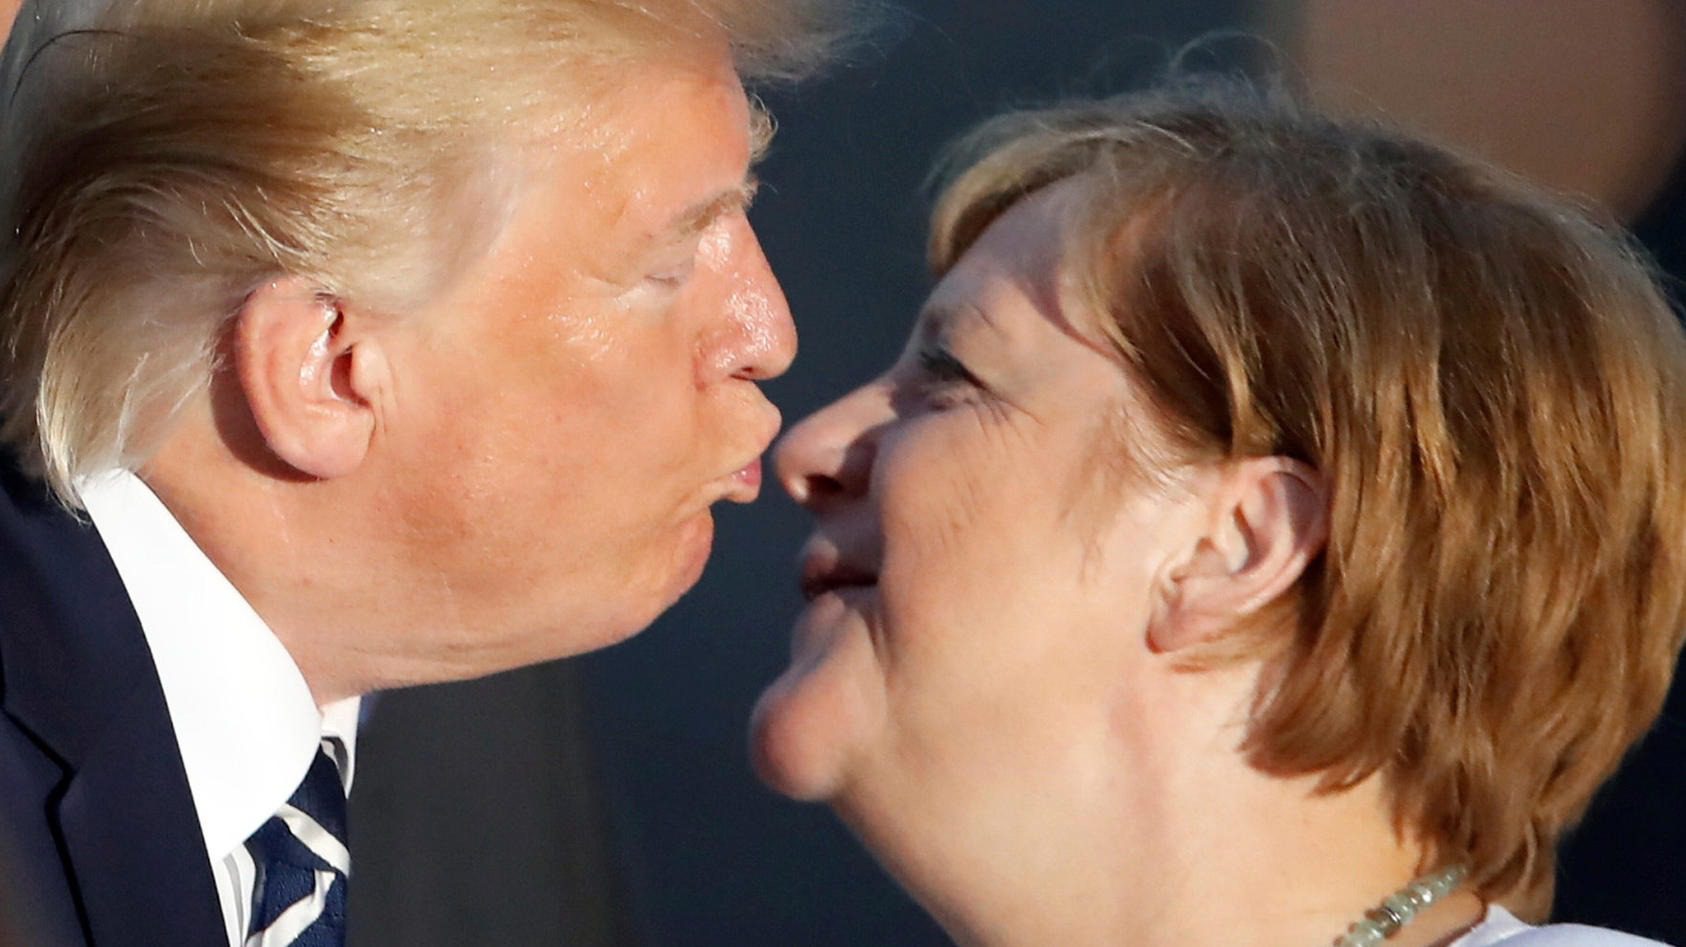 Küsst Donald Trump hier Angela Merkel? ➤ Prozoro.net.ua